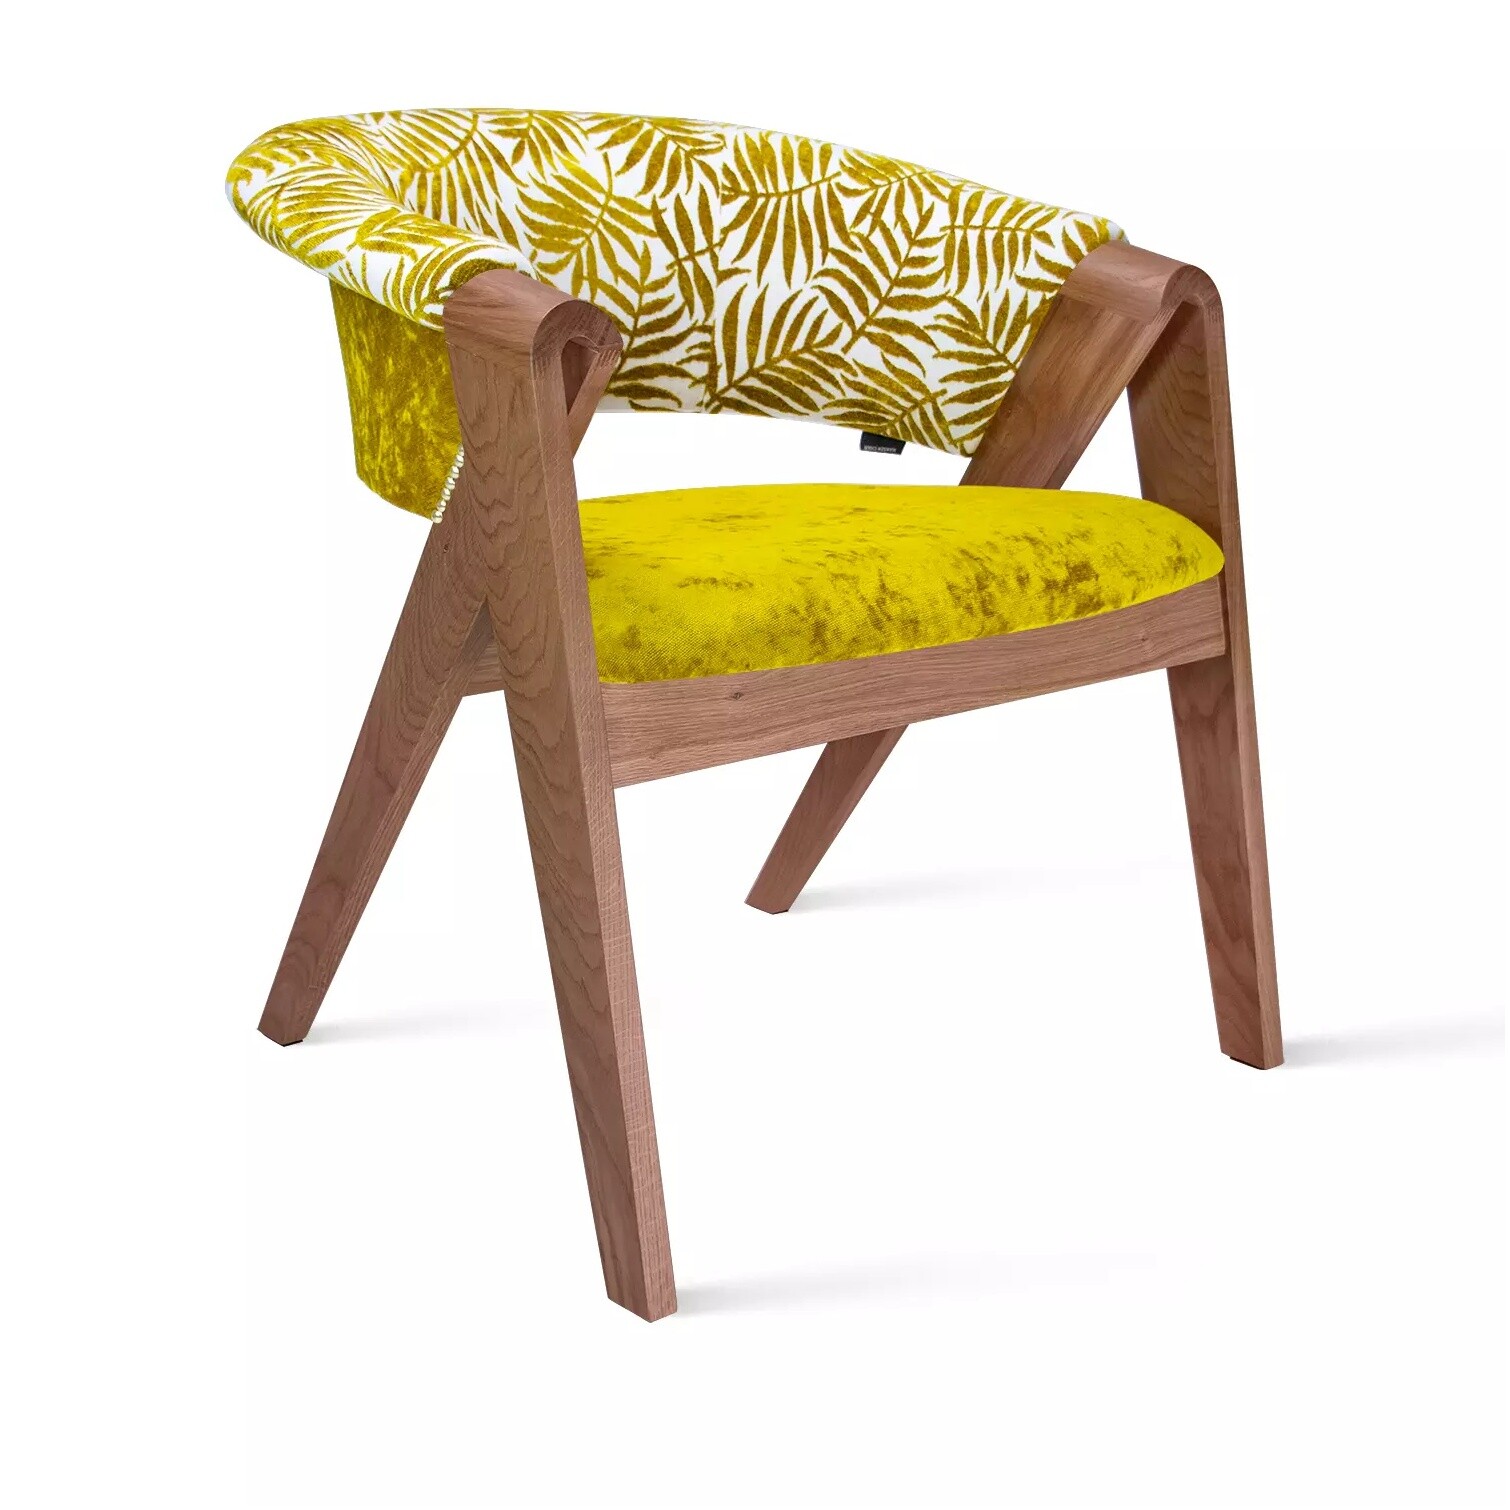 Кресло деревянное с мягким сиденьем желтое, коричневое Lars